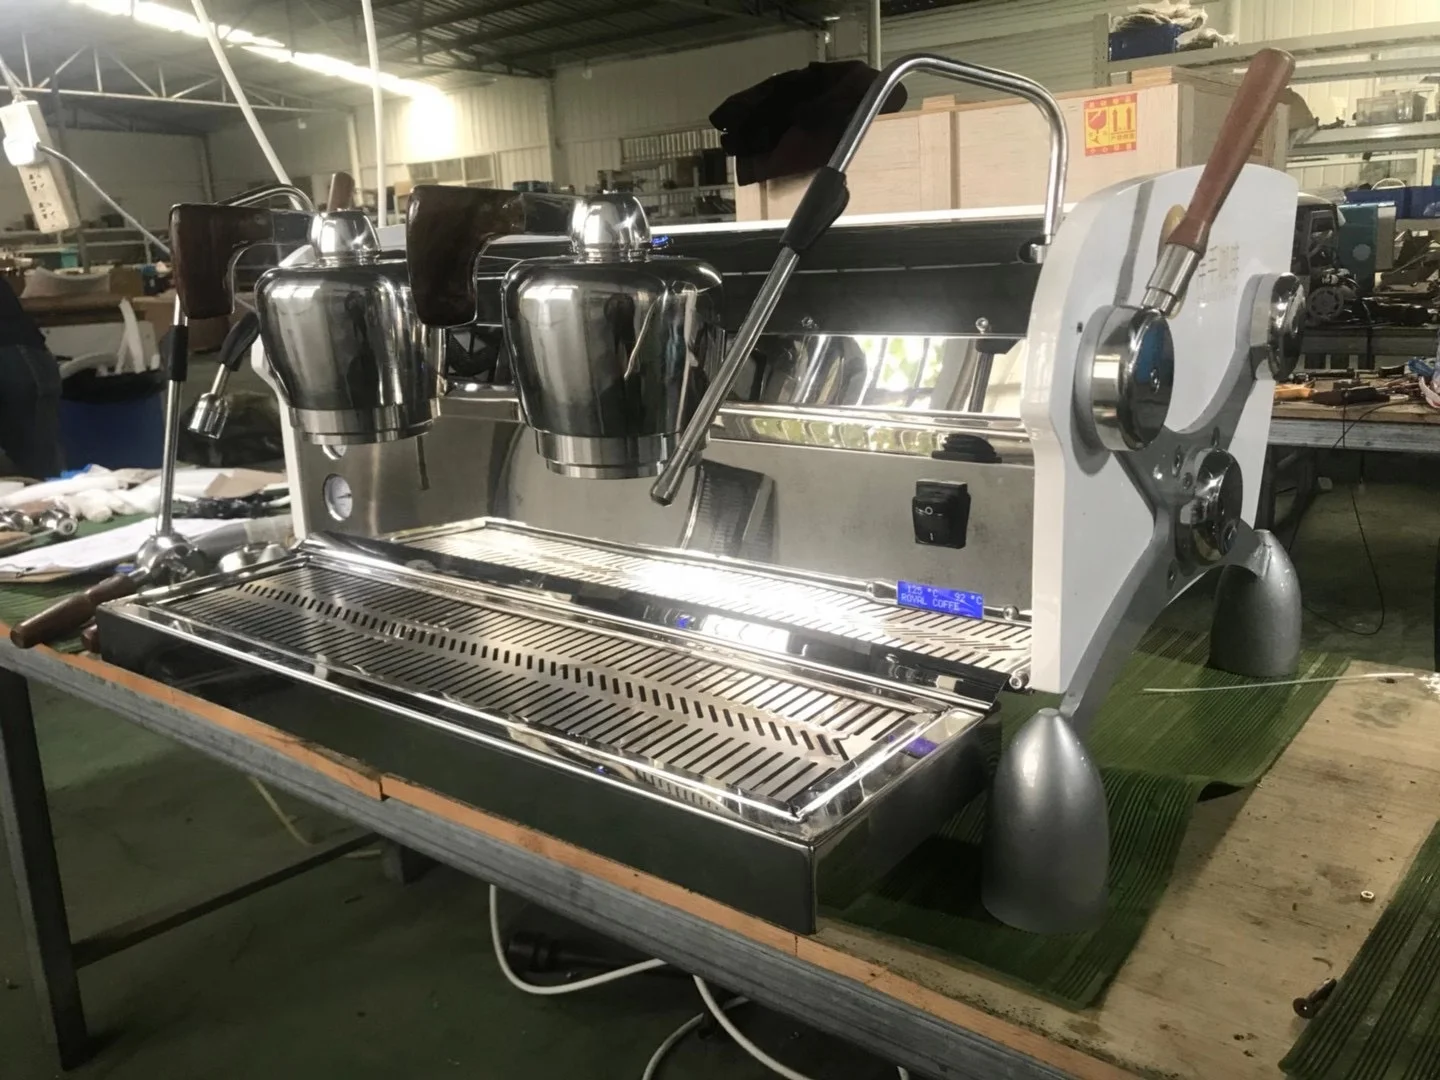 
Commercial espresso coffee machine Coffee maker double group coffee machine Semi-Automatic Italy Espresso Machine 